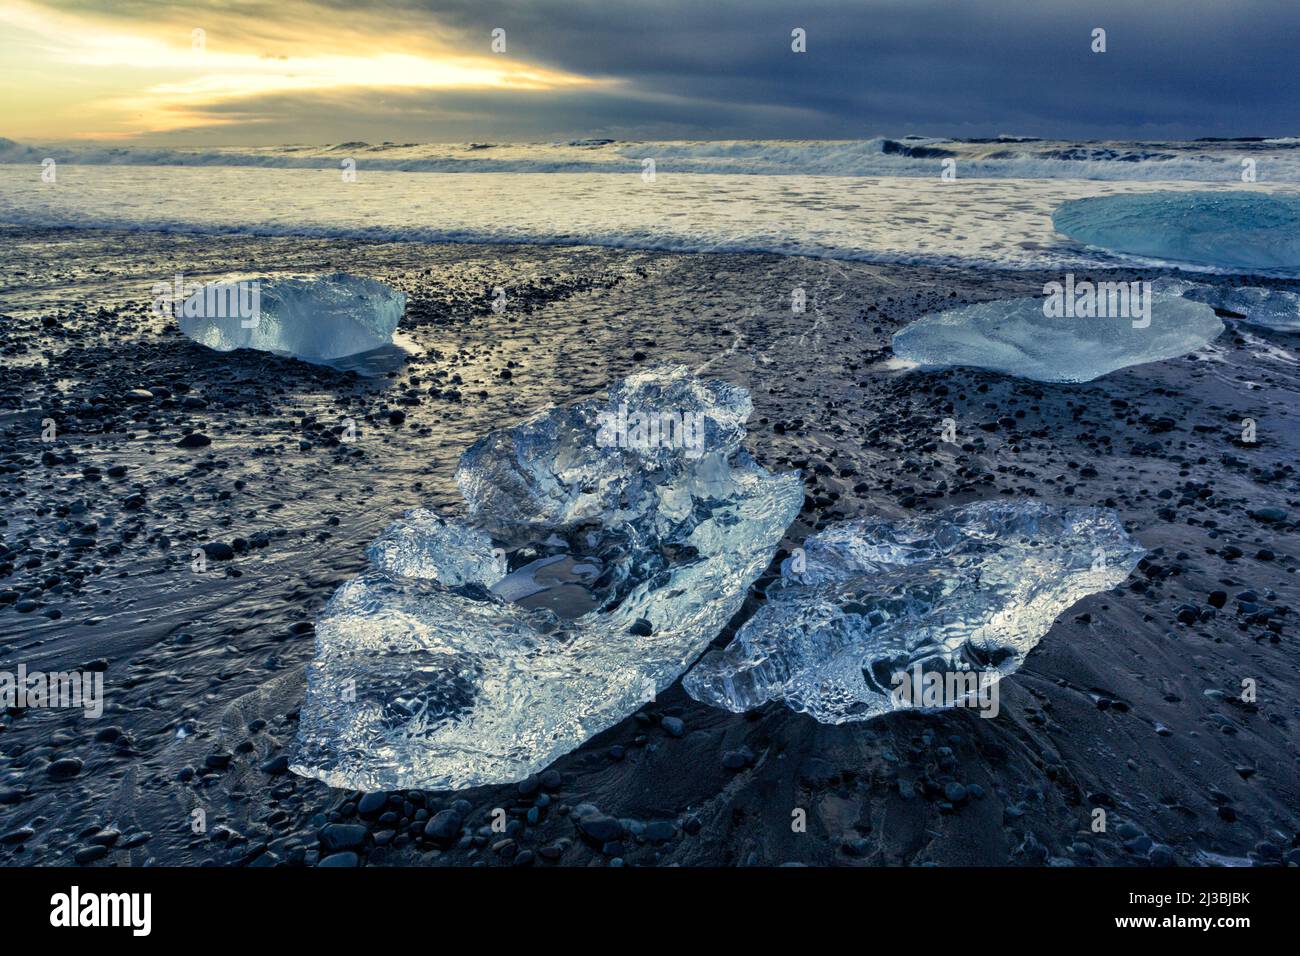 Les vestiges de l'iceberg se sont enlais sur la plage de Jökulsarlön, où des icebergs s'écoulent de la lagune de Jökulsarlön en Islande Banque D'Images